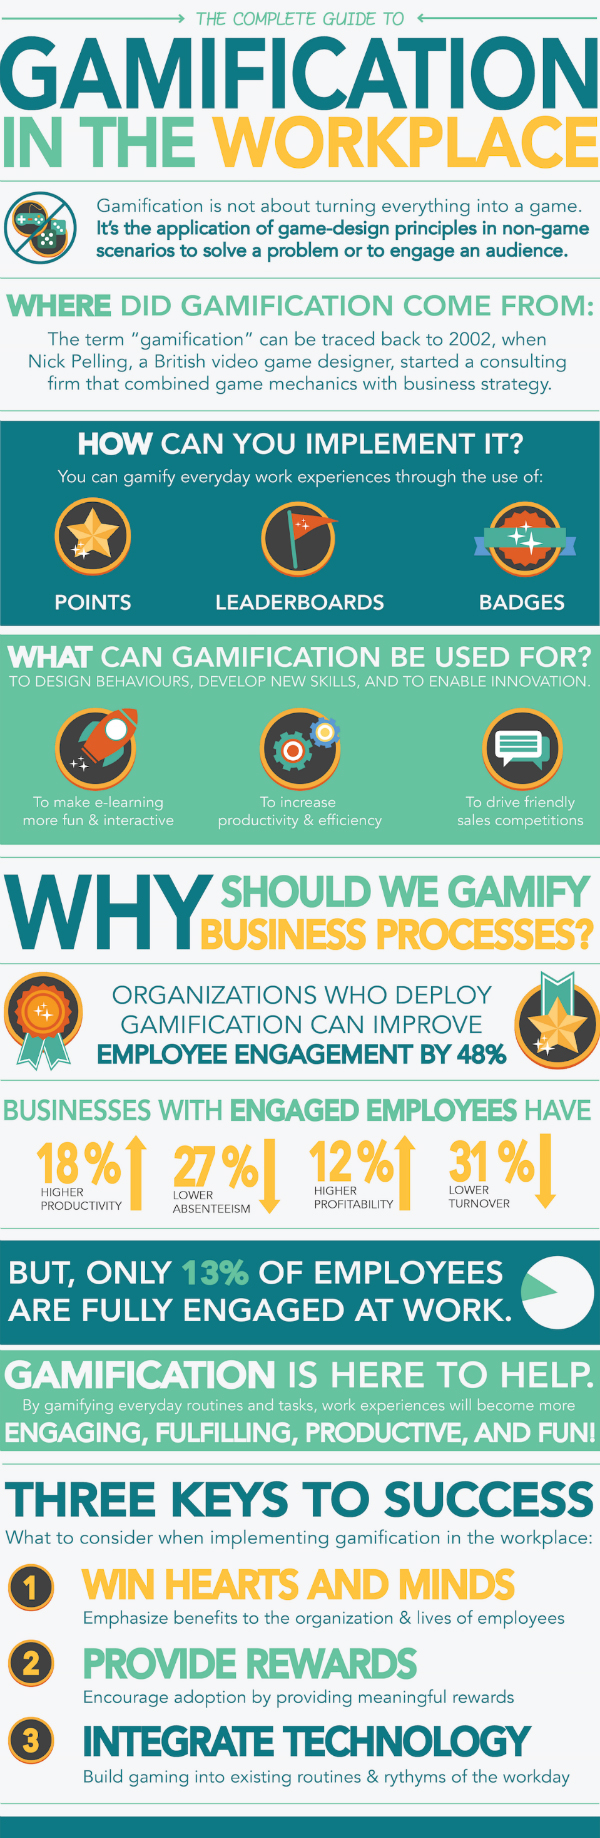 Nostromo, agence de communication, vous présente une infographie sur la gamification dans l'entreprise